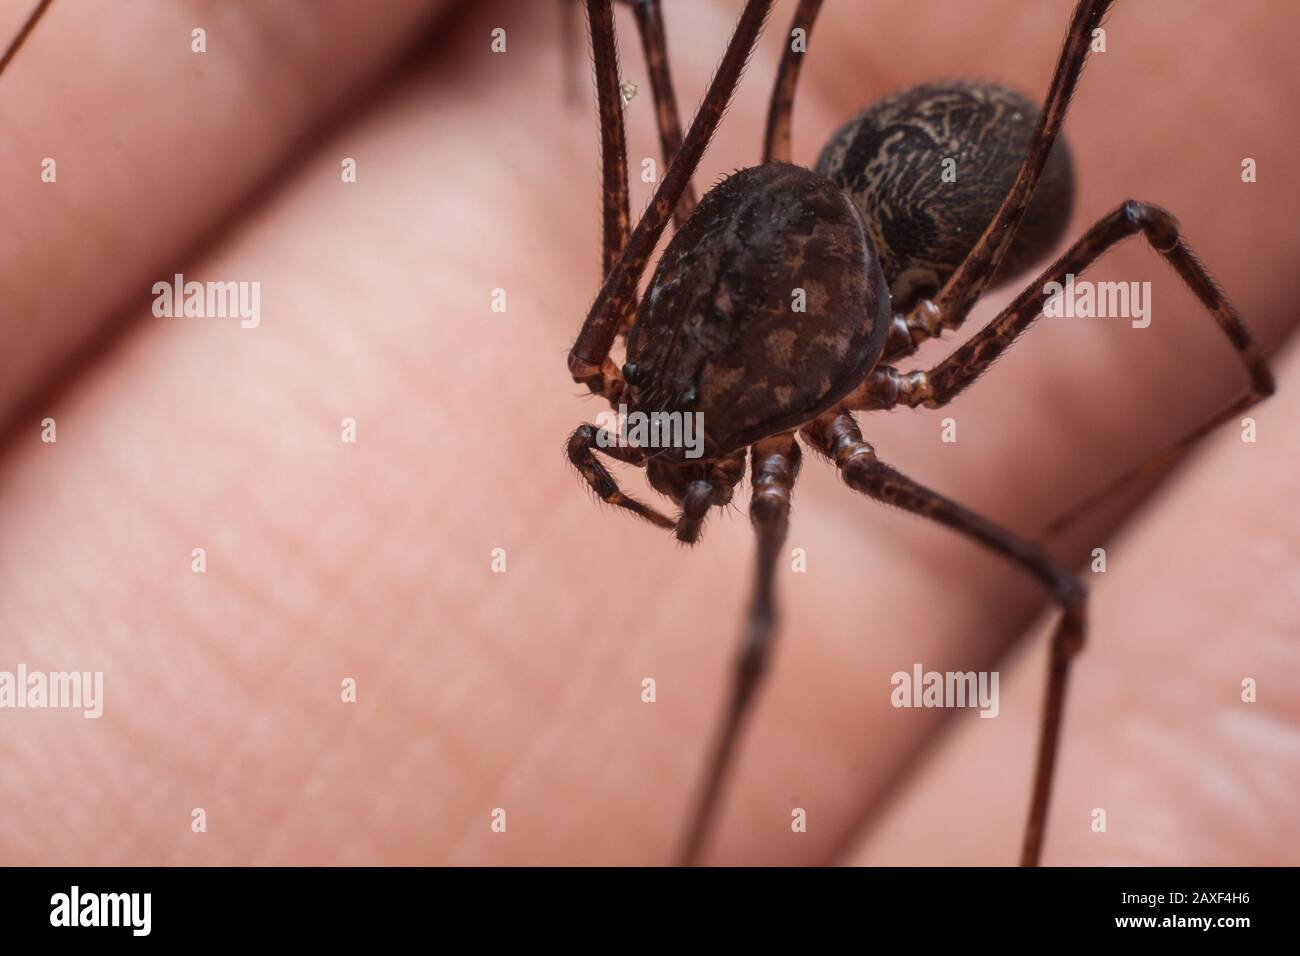 Petite araignée de maison connue sous le nom de araignée, Scytodes, gros plan de l'araignée sur la main Banque D'Images